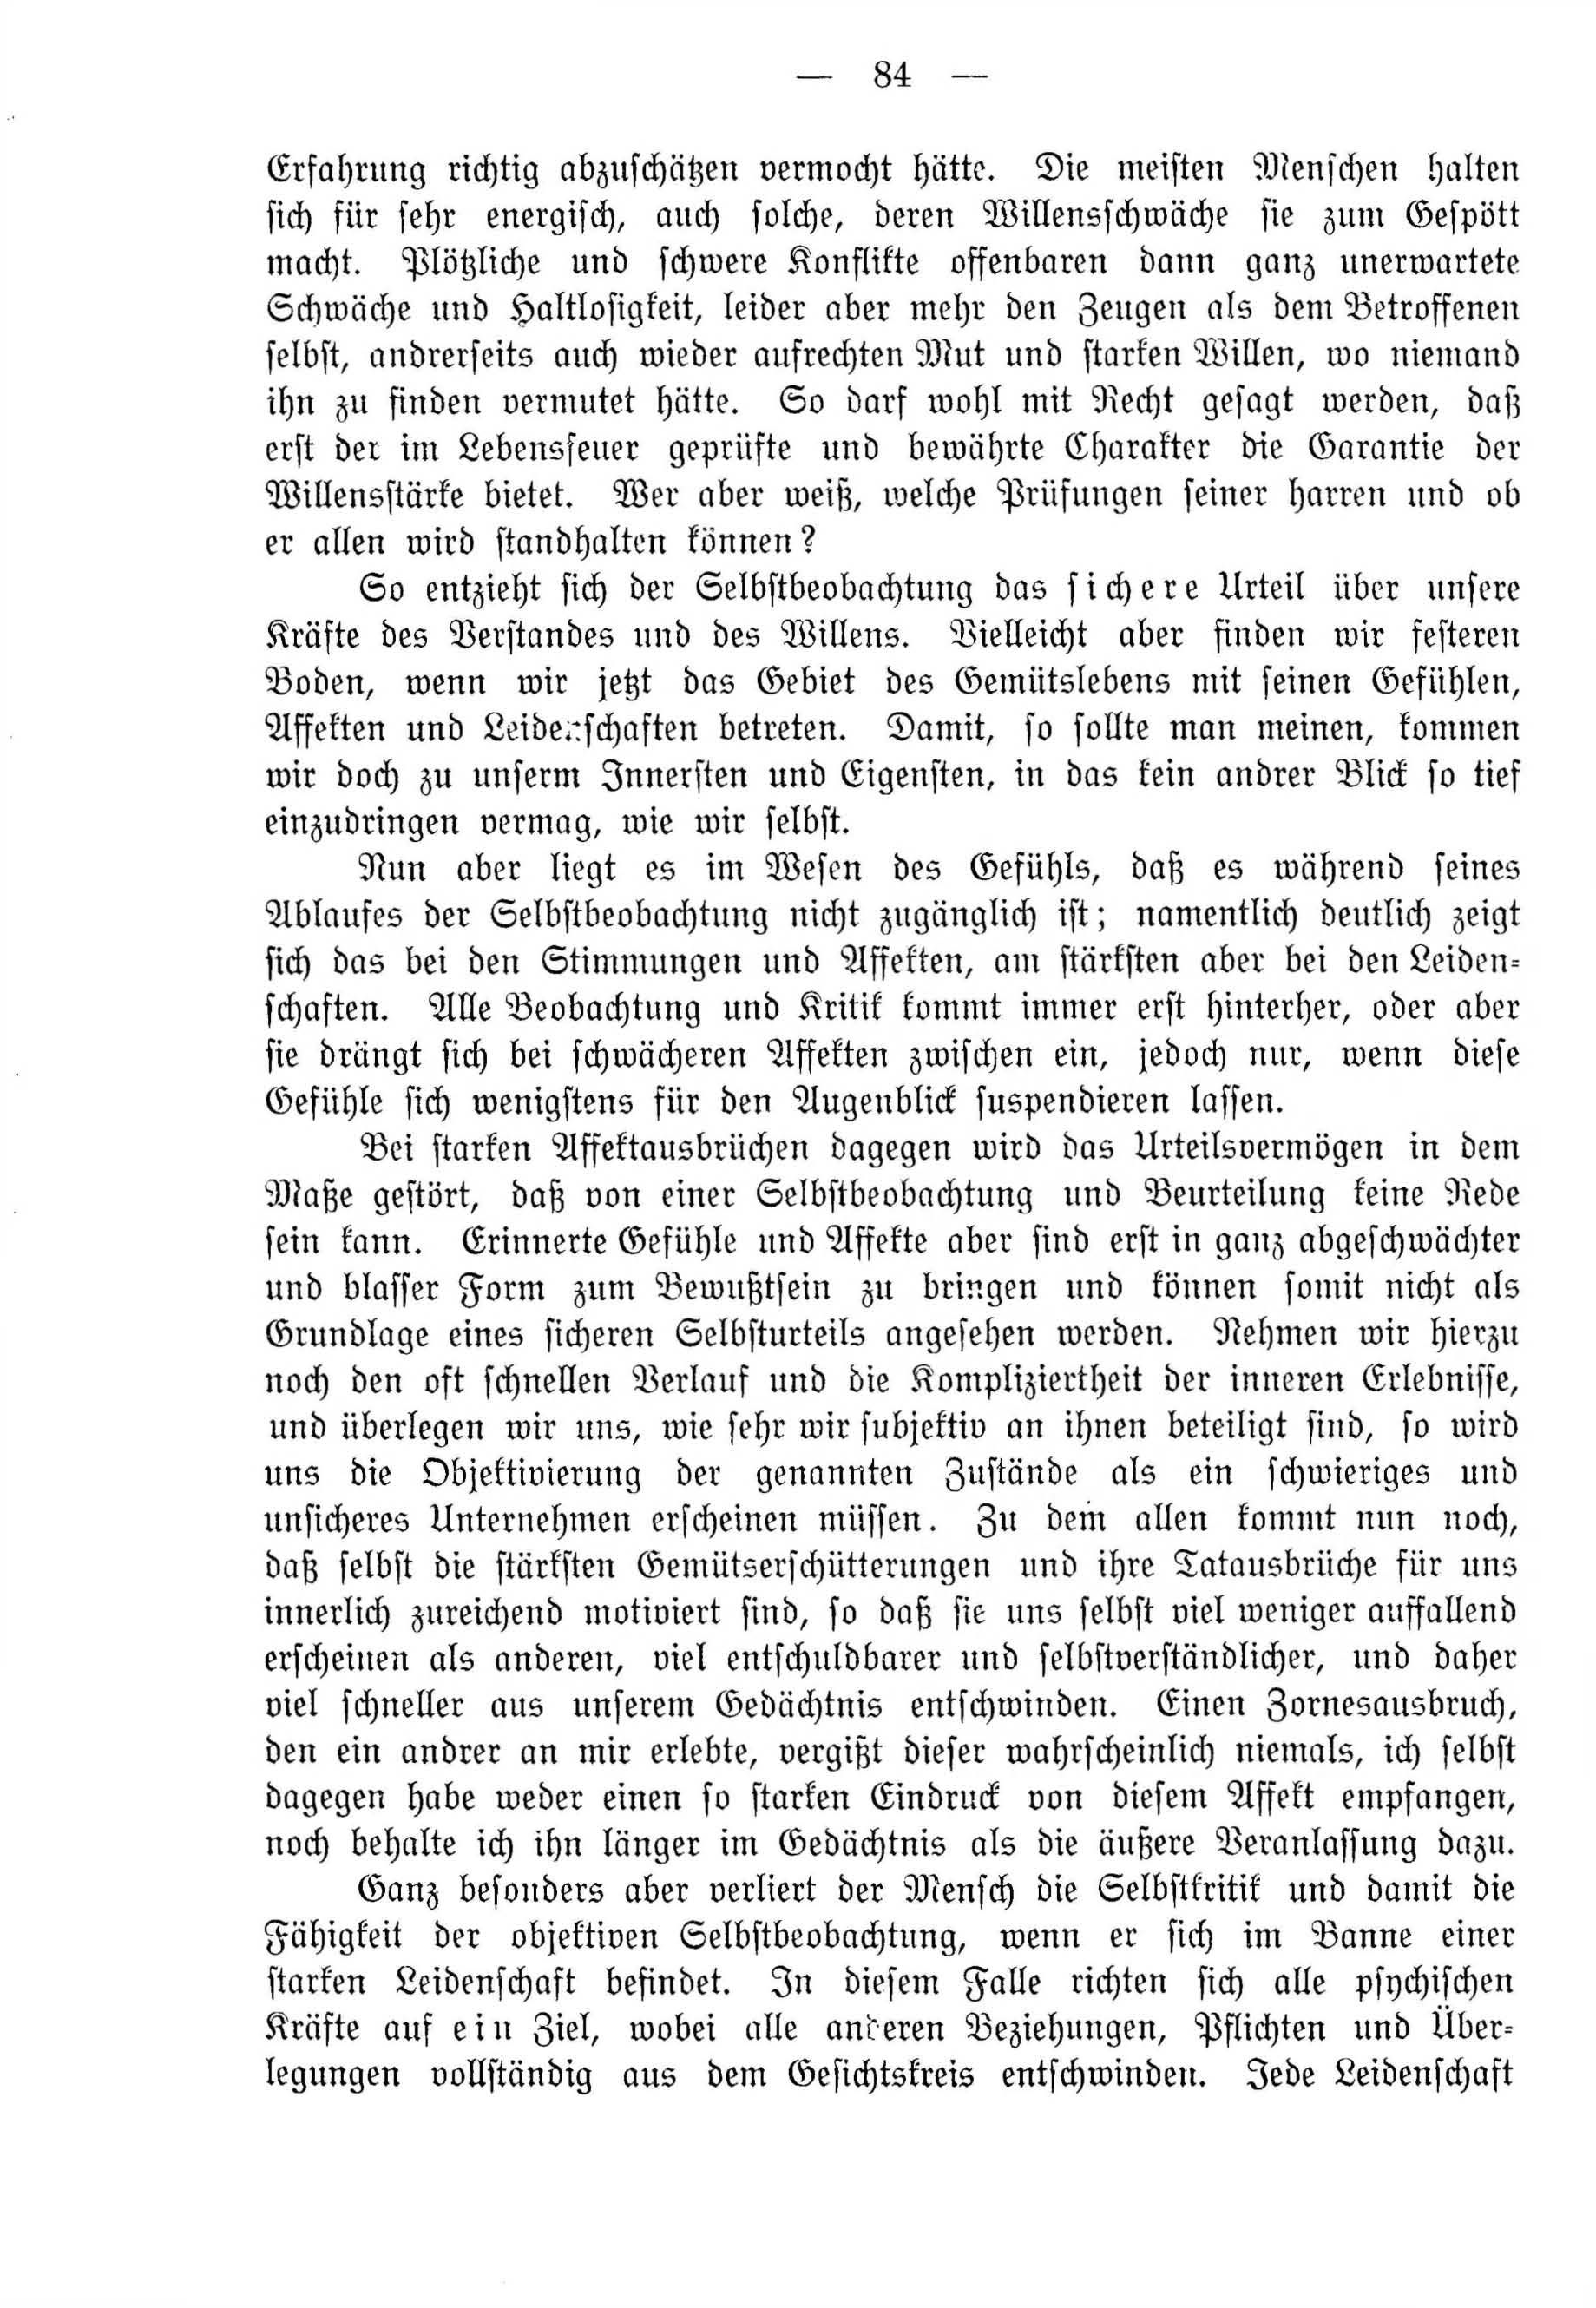 Deutsche Monatsschrift für Russland [4] (1915) | 84. (84) Main body of text